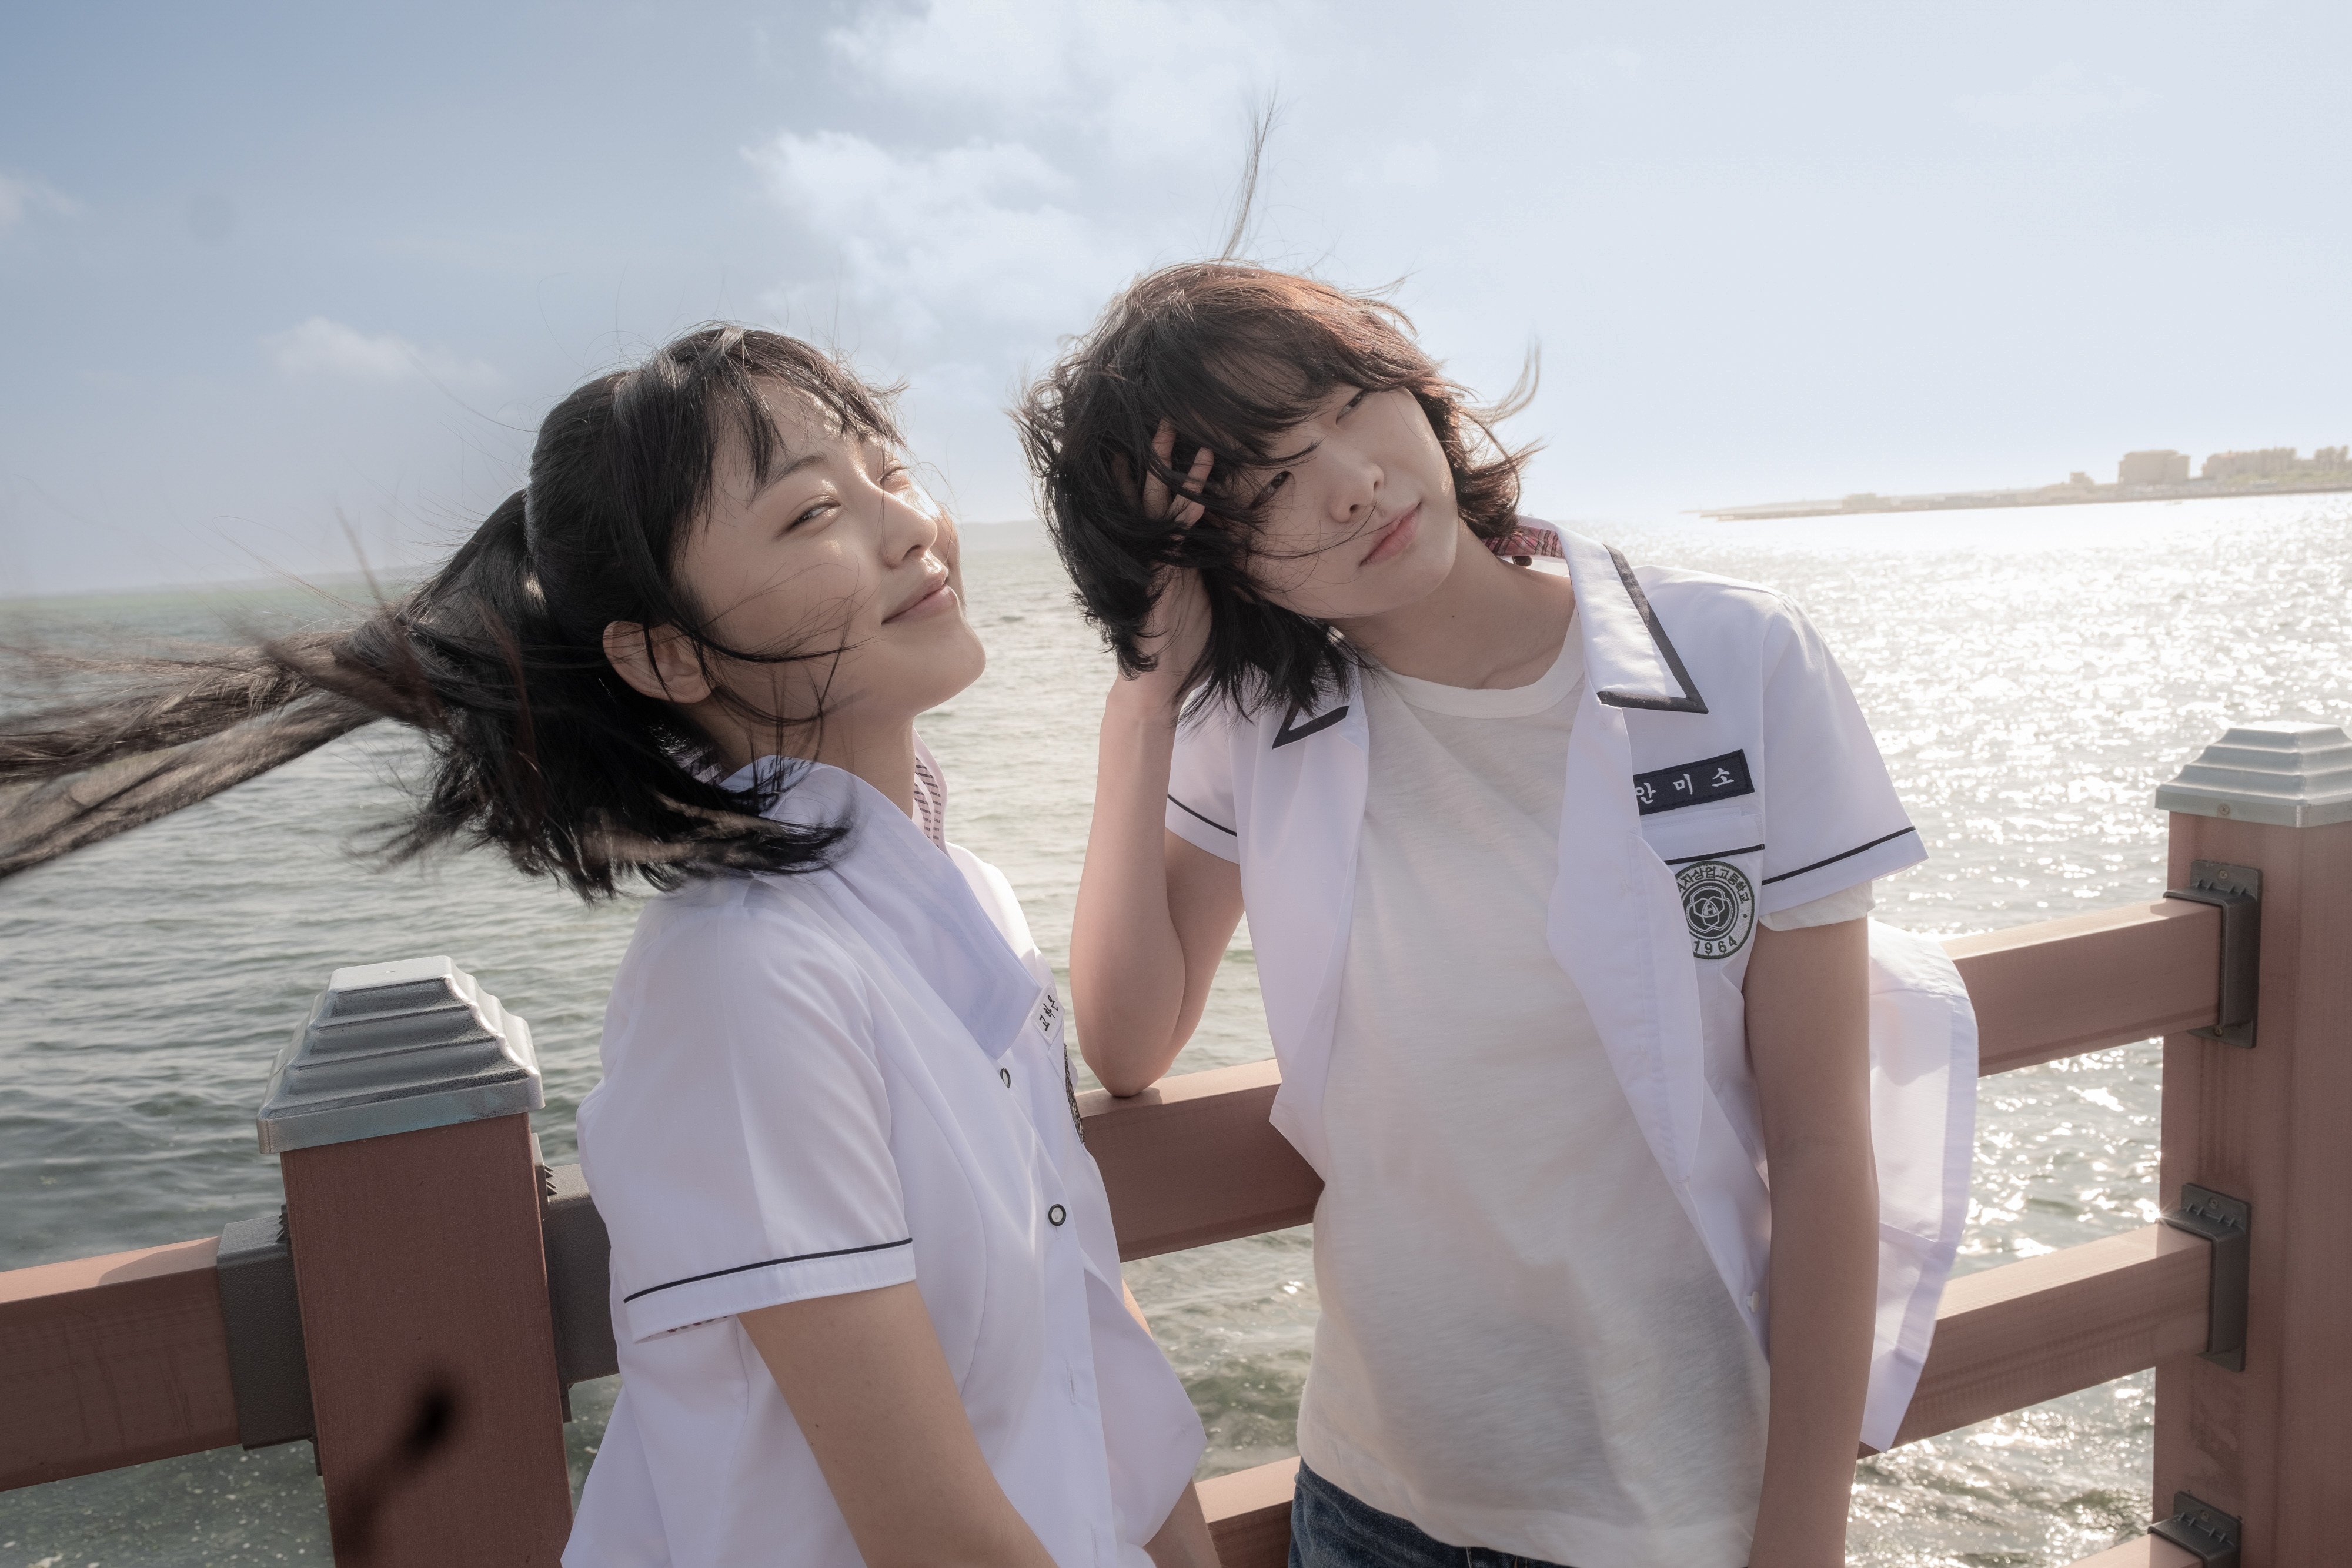 Jeon So-nee (left) and Kim Da-mi in a still from Soul Mate, directed by Min Young-keun - a remake of Hong Kong filmmaker Derek Tsang’s award-winning 2016 movie Soul Mate. Photo: Handout